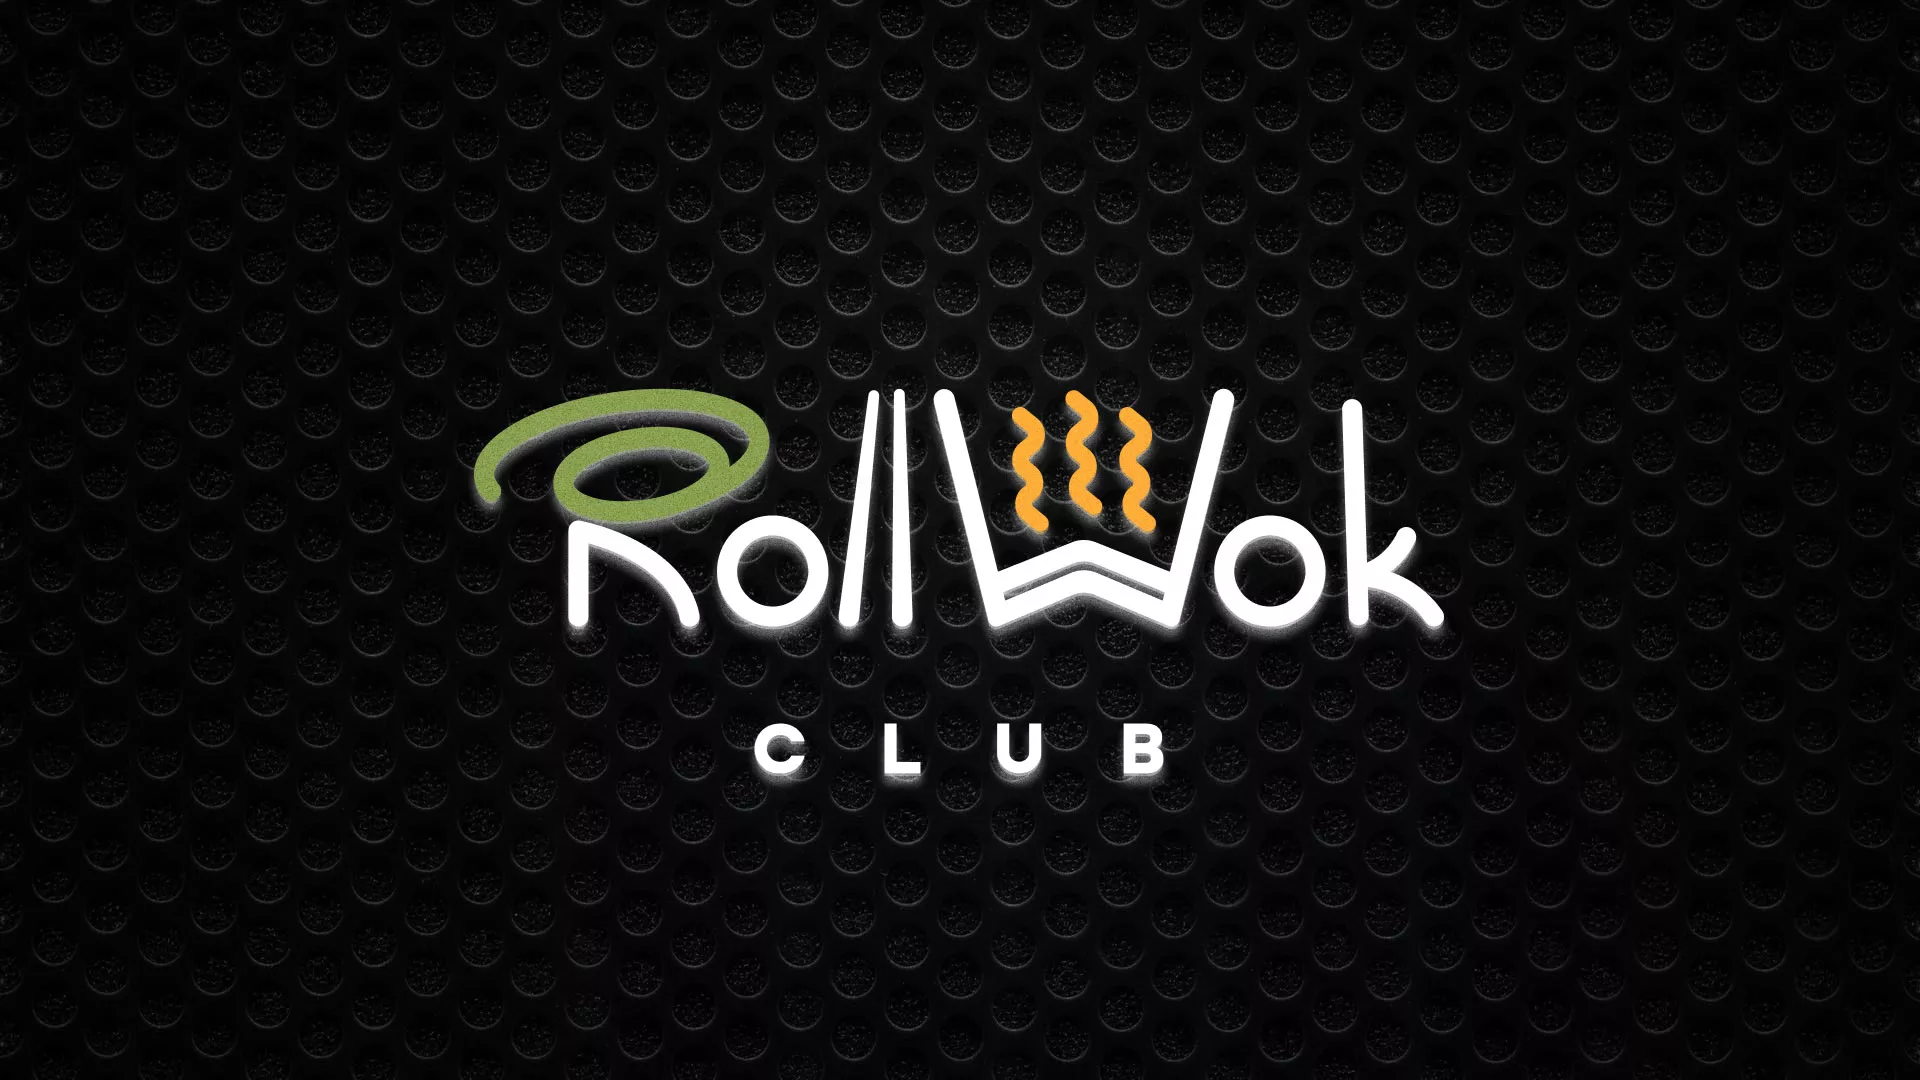 Брендирование торговых точек суши-бара «Roll Wok Club» в Ворсме